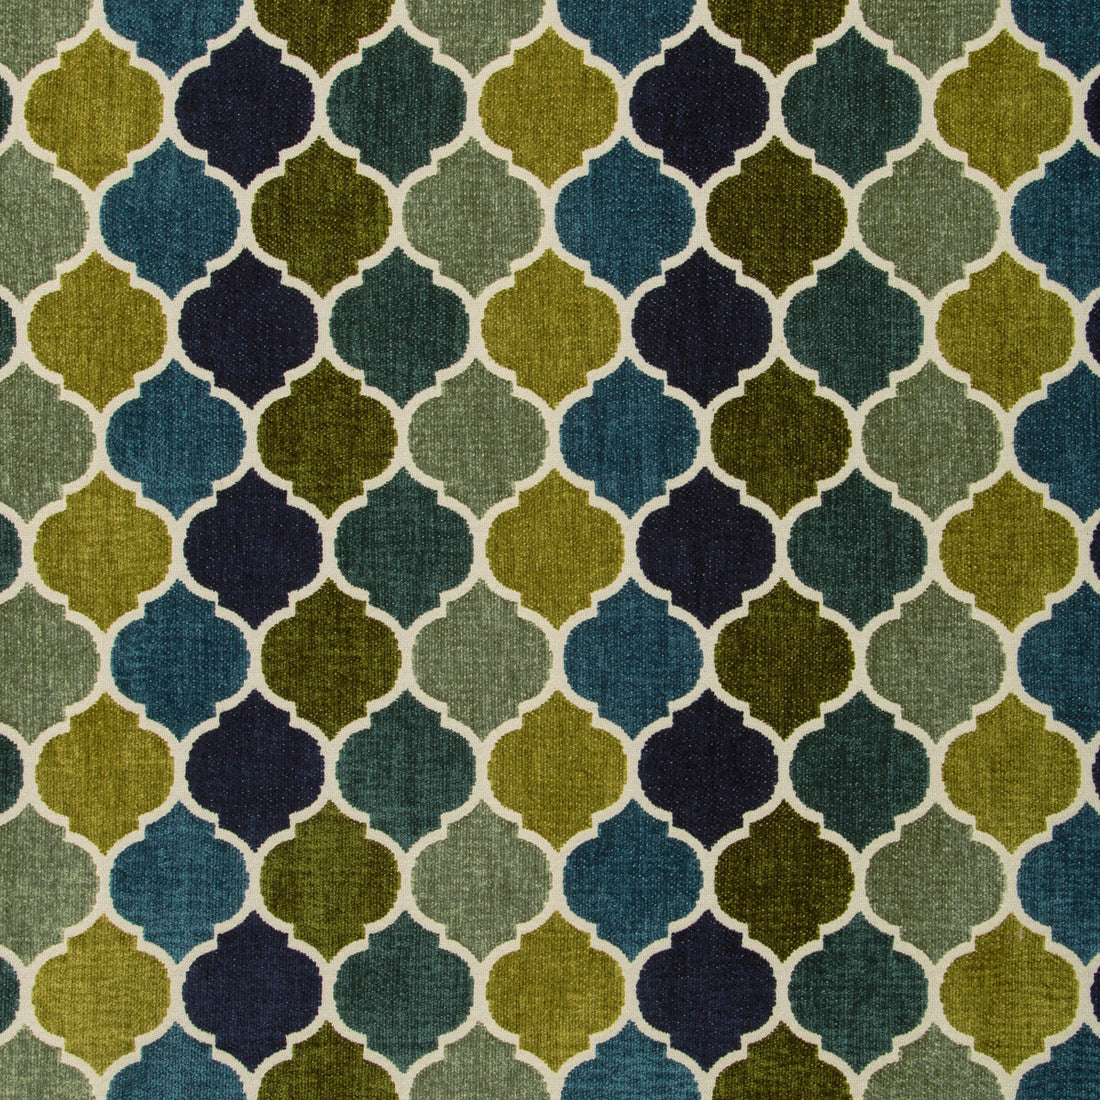 Kravet Design fabric in 35691-513 color - pattern 35691.513.0 - by Kravet Design